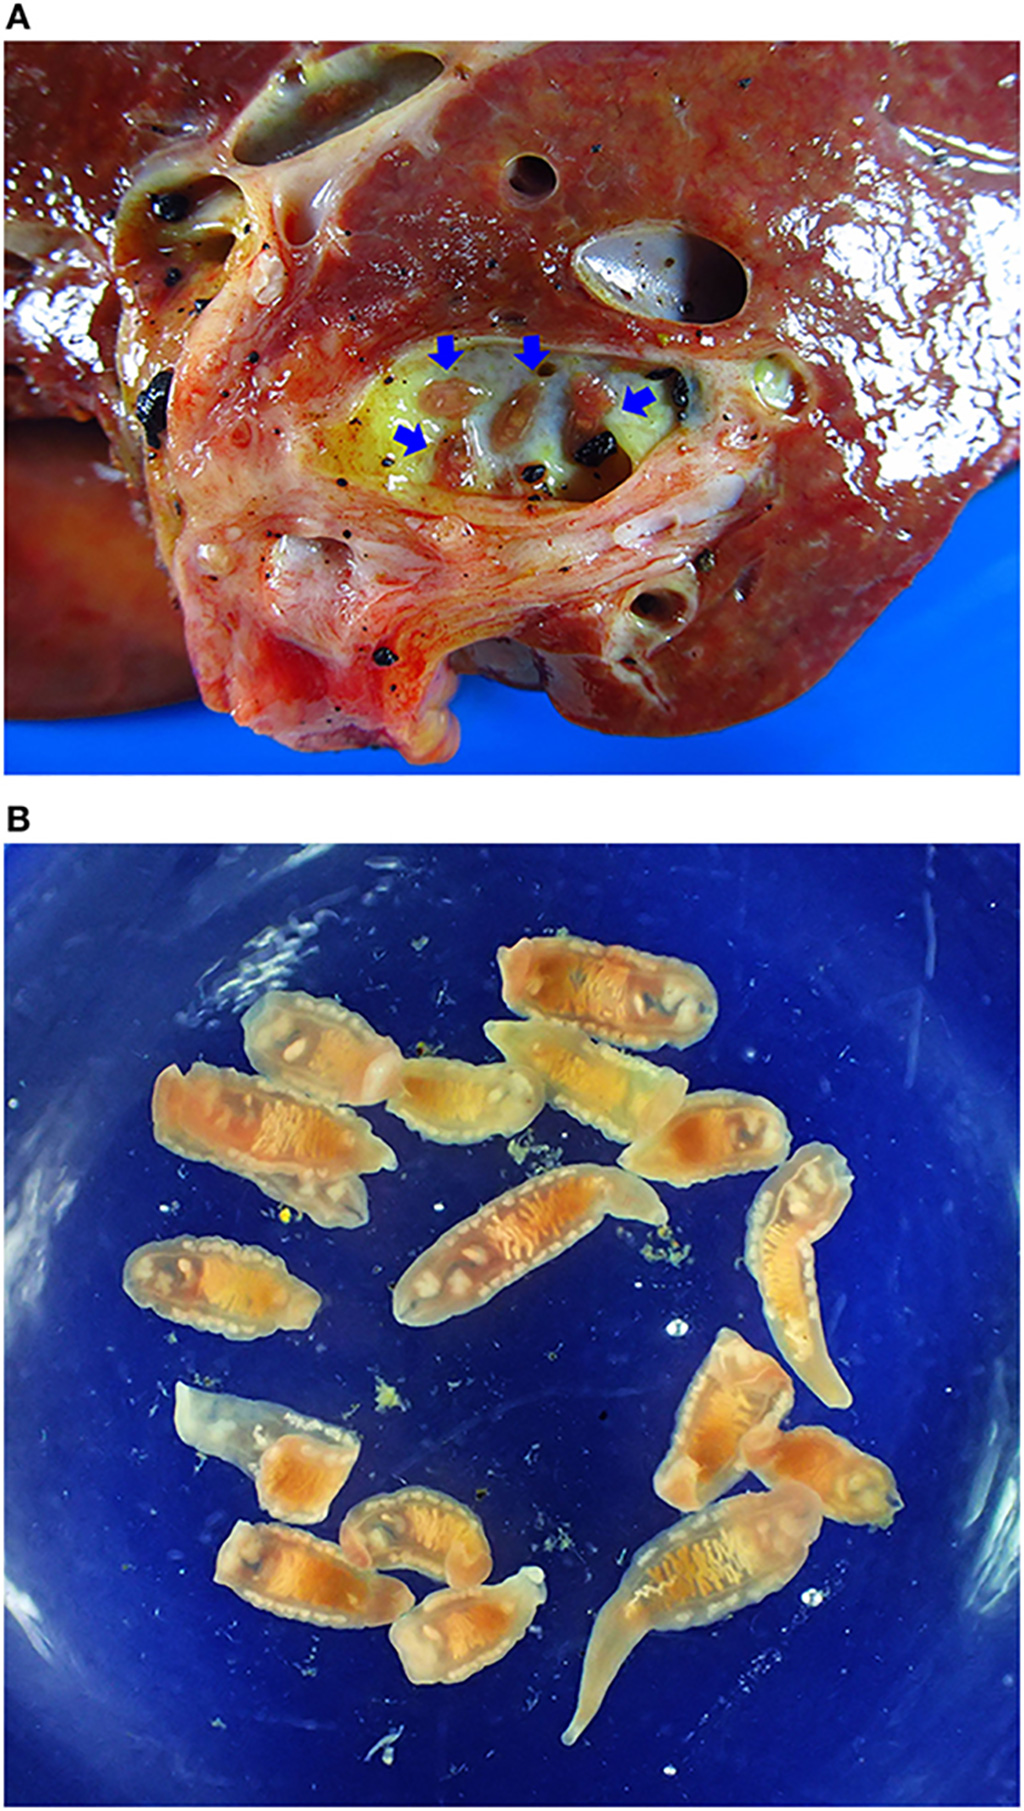 Imagen: Colangiocarcinoma asociado a opistorquiasis. (A) Muestra de colangiocarcinoma que muestra gusanos adultos en el conducto biliar (flechas azules). (B) Opisthorchis viverrini adulto recuperado del hígado (Fotografía cortesía de la Universidad de Khon Kaen)